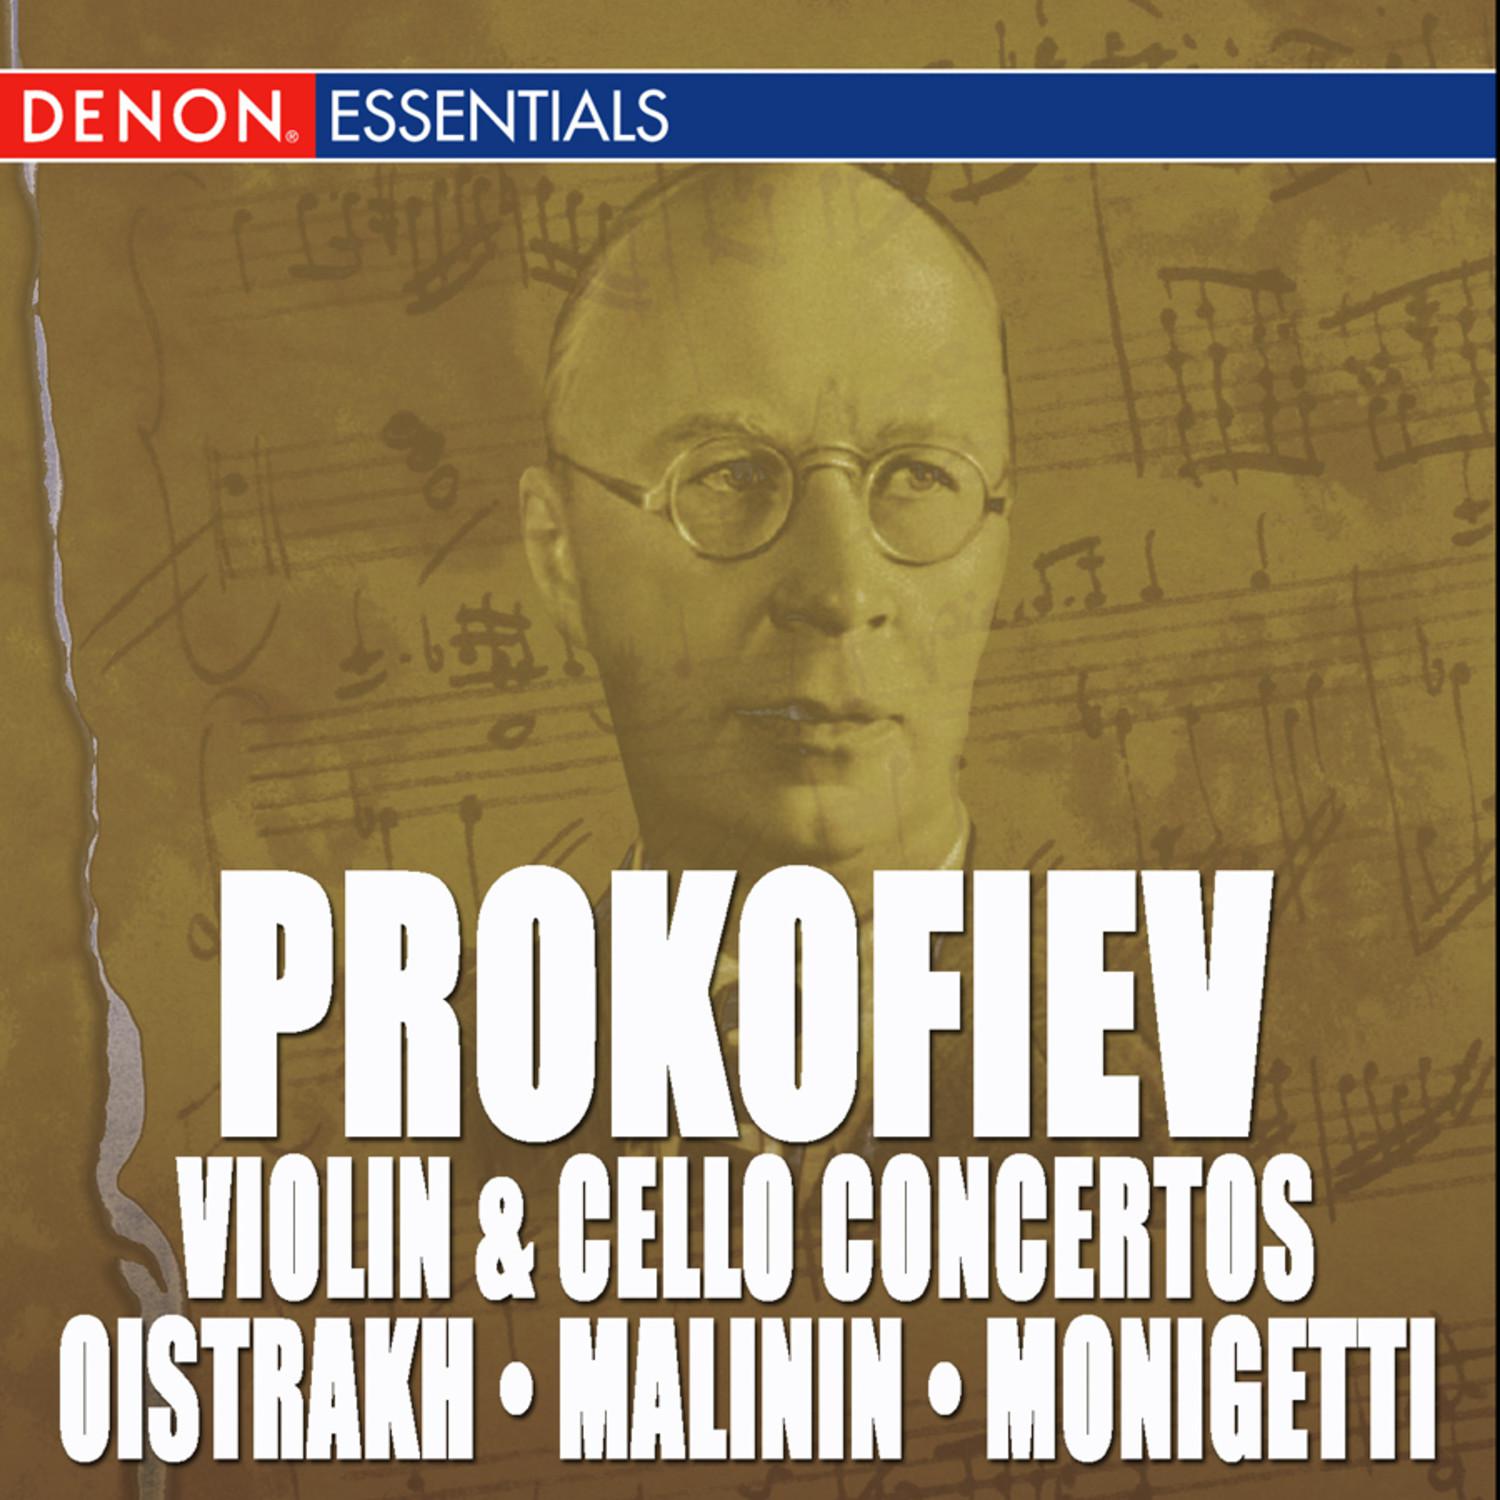 Cello Concerto in E Minor, Op. 125: II. Allegro giusto